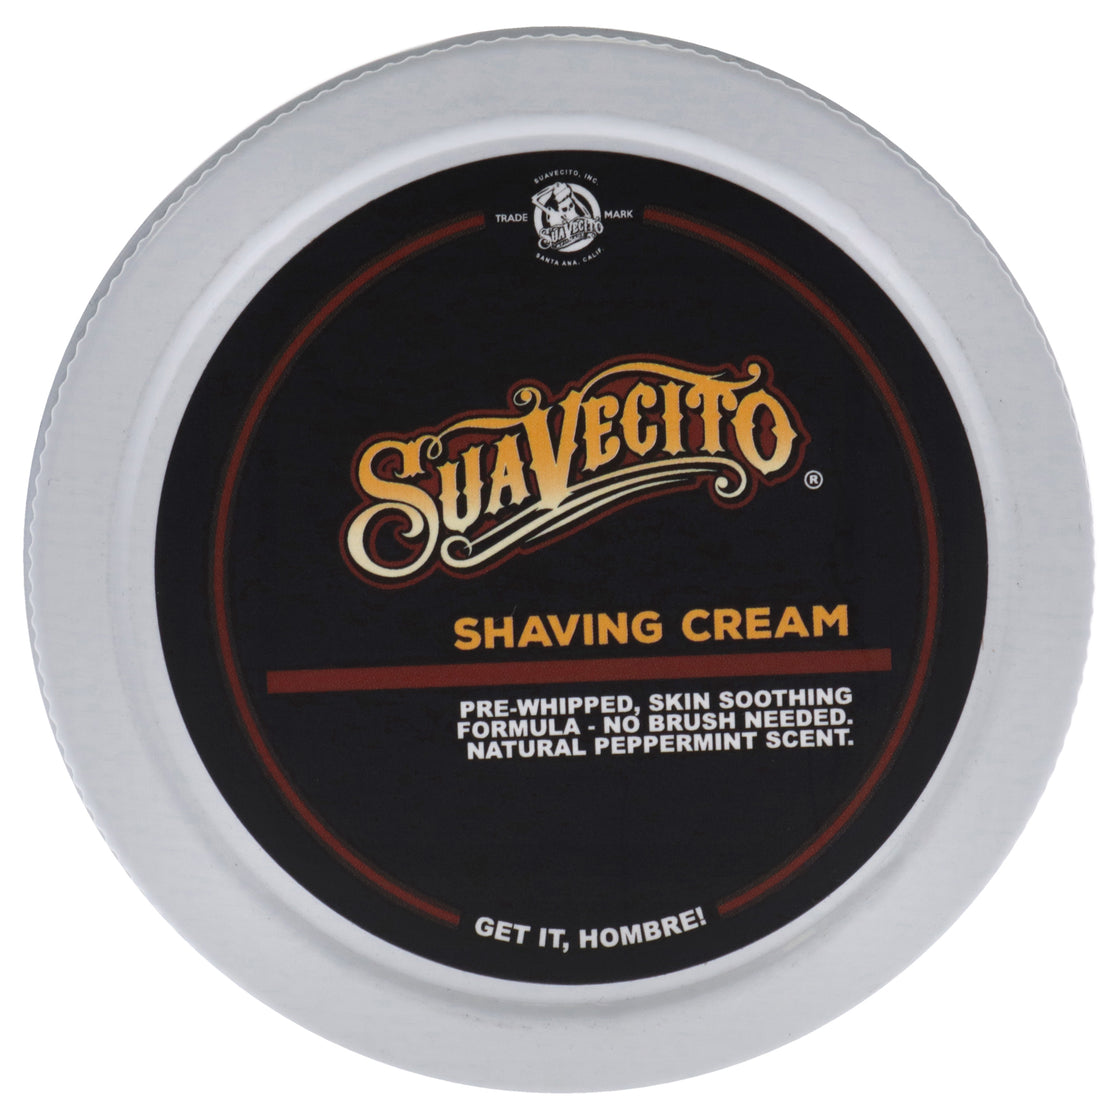 Shaving Creme by Suavecito for Men - 8 oz Shave Cream